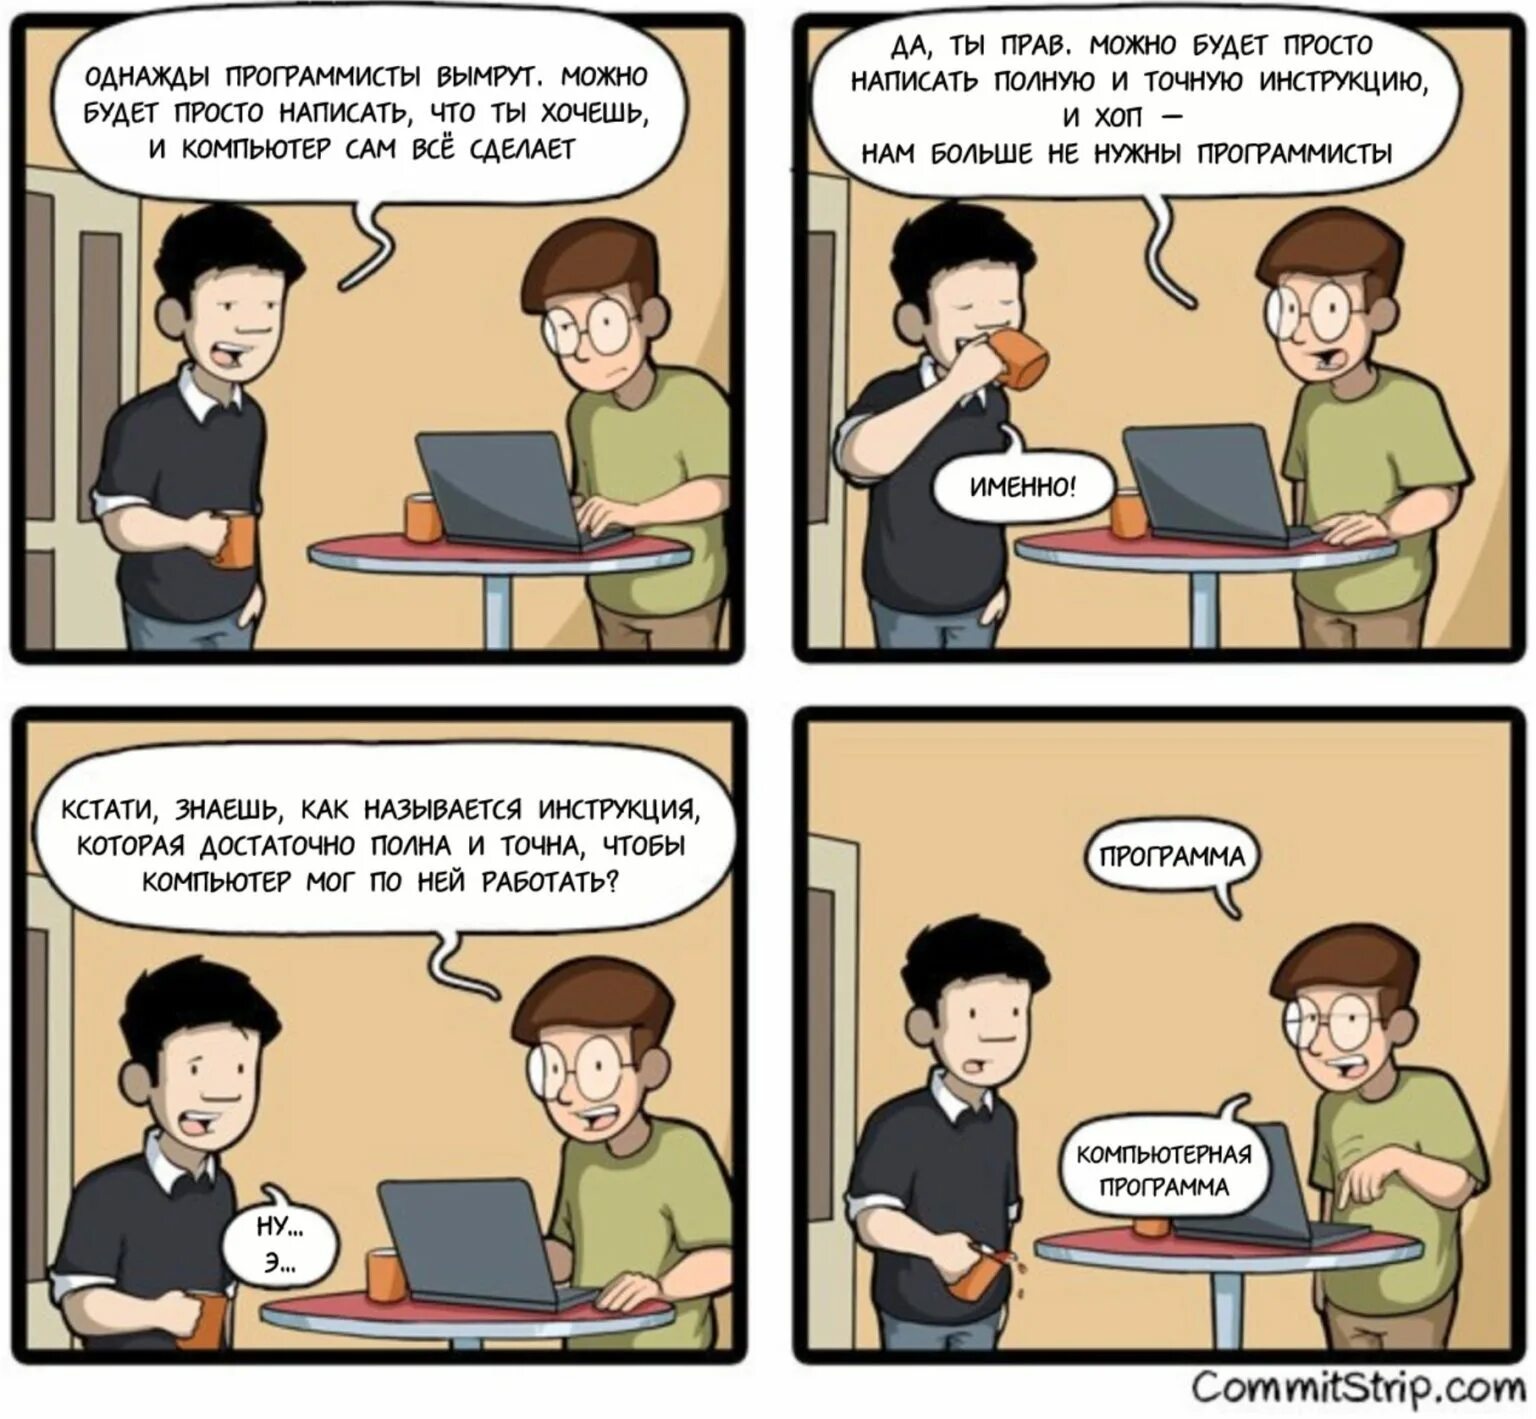 Комиксы про программистов. Шутки про программистов. Веселые комиксы про программистов. Смешной программист. Напишут работаем видит